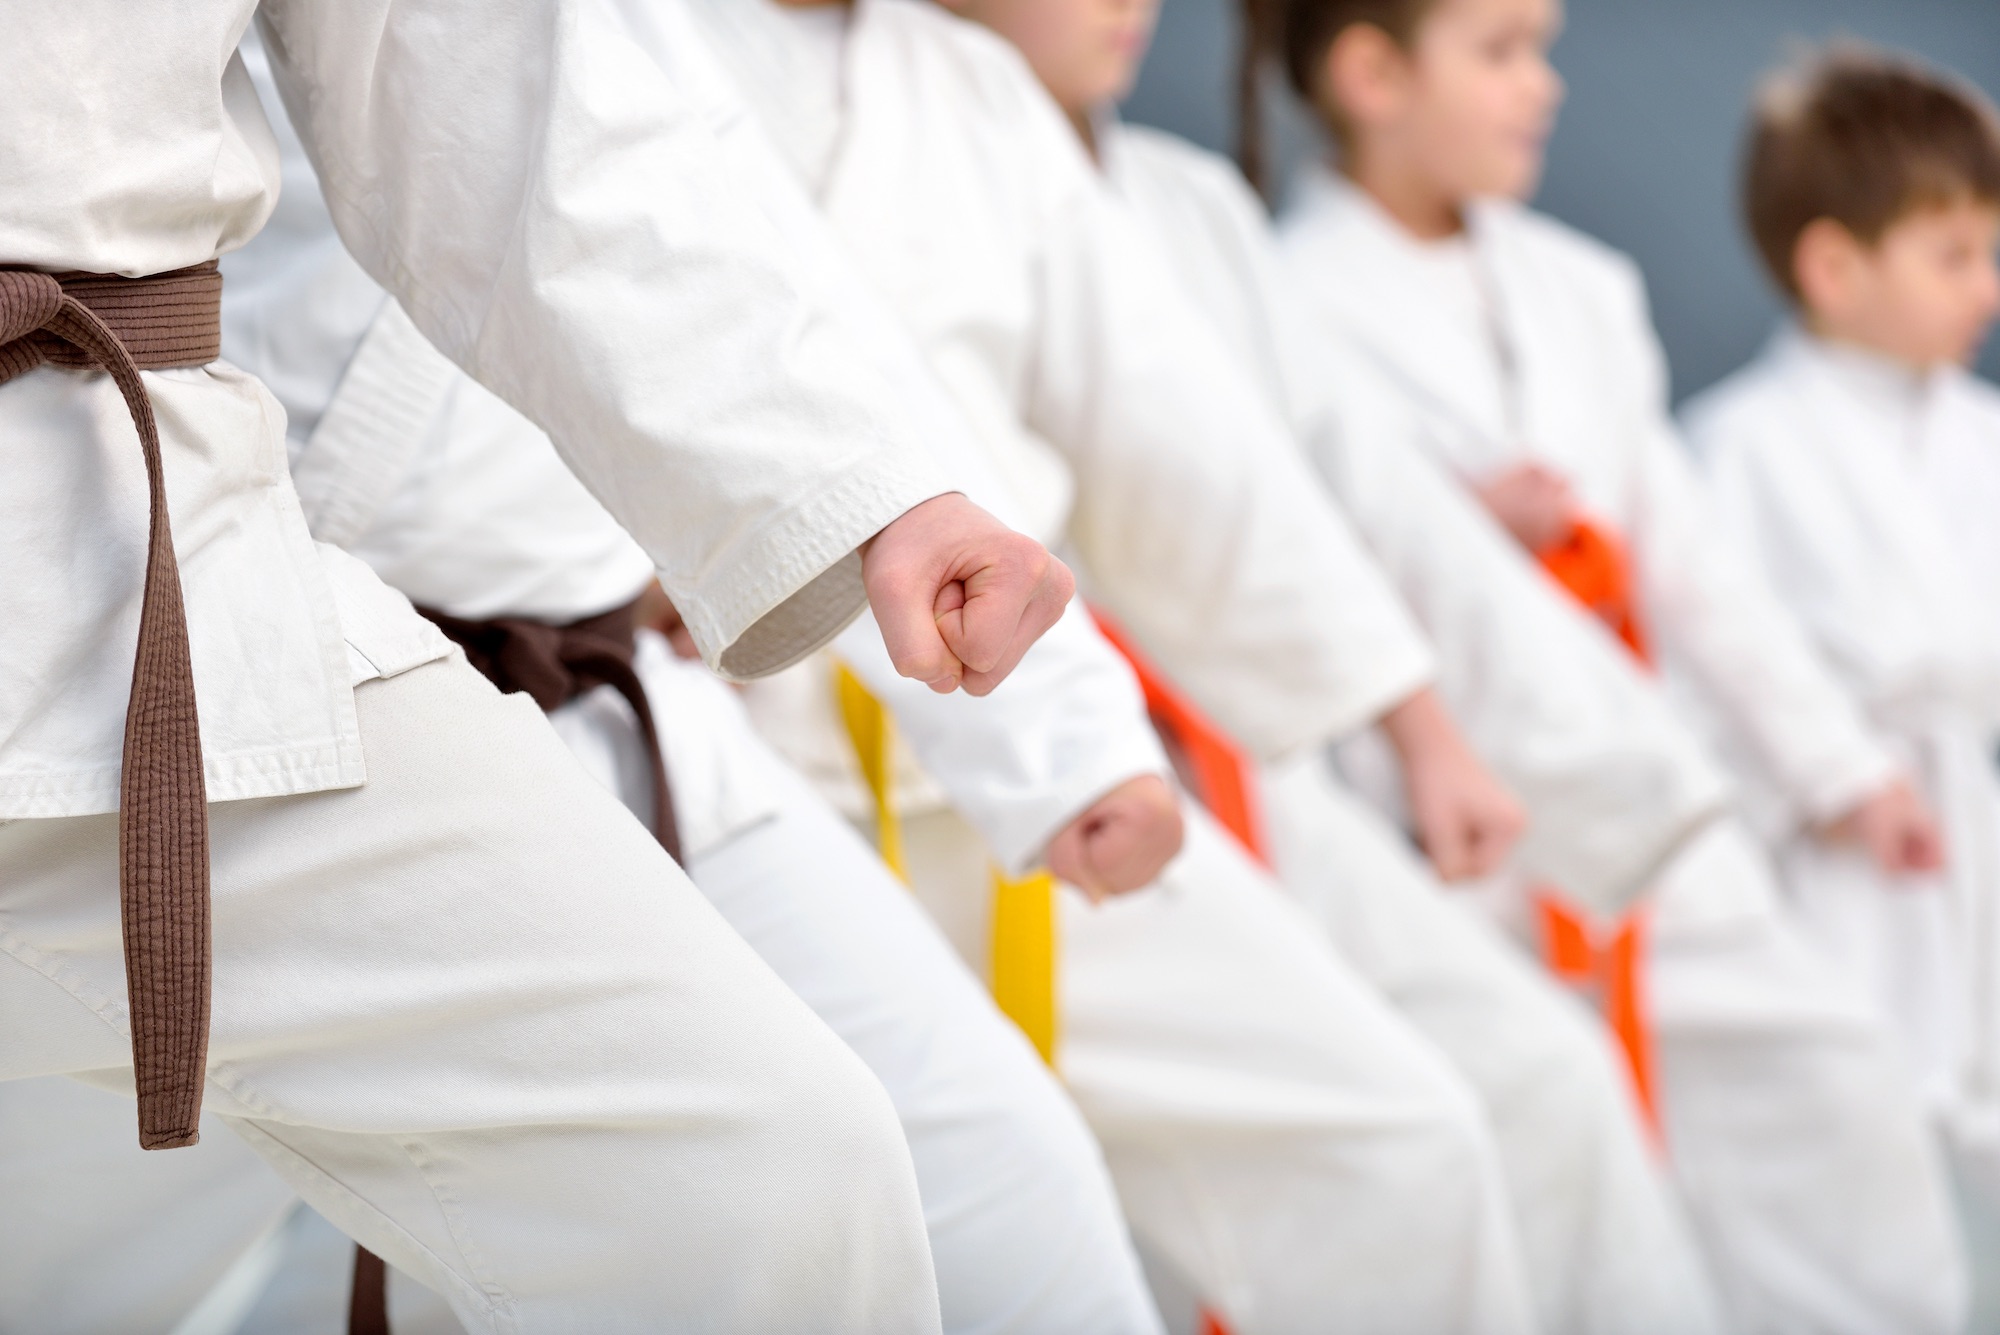 Центр единоборств «Победа» приглашает на занятия по дзюдо, самбо и борьбе, фото